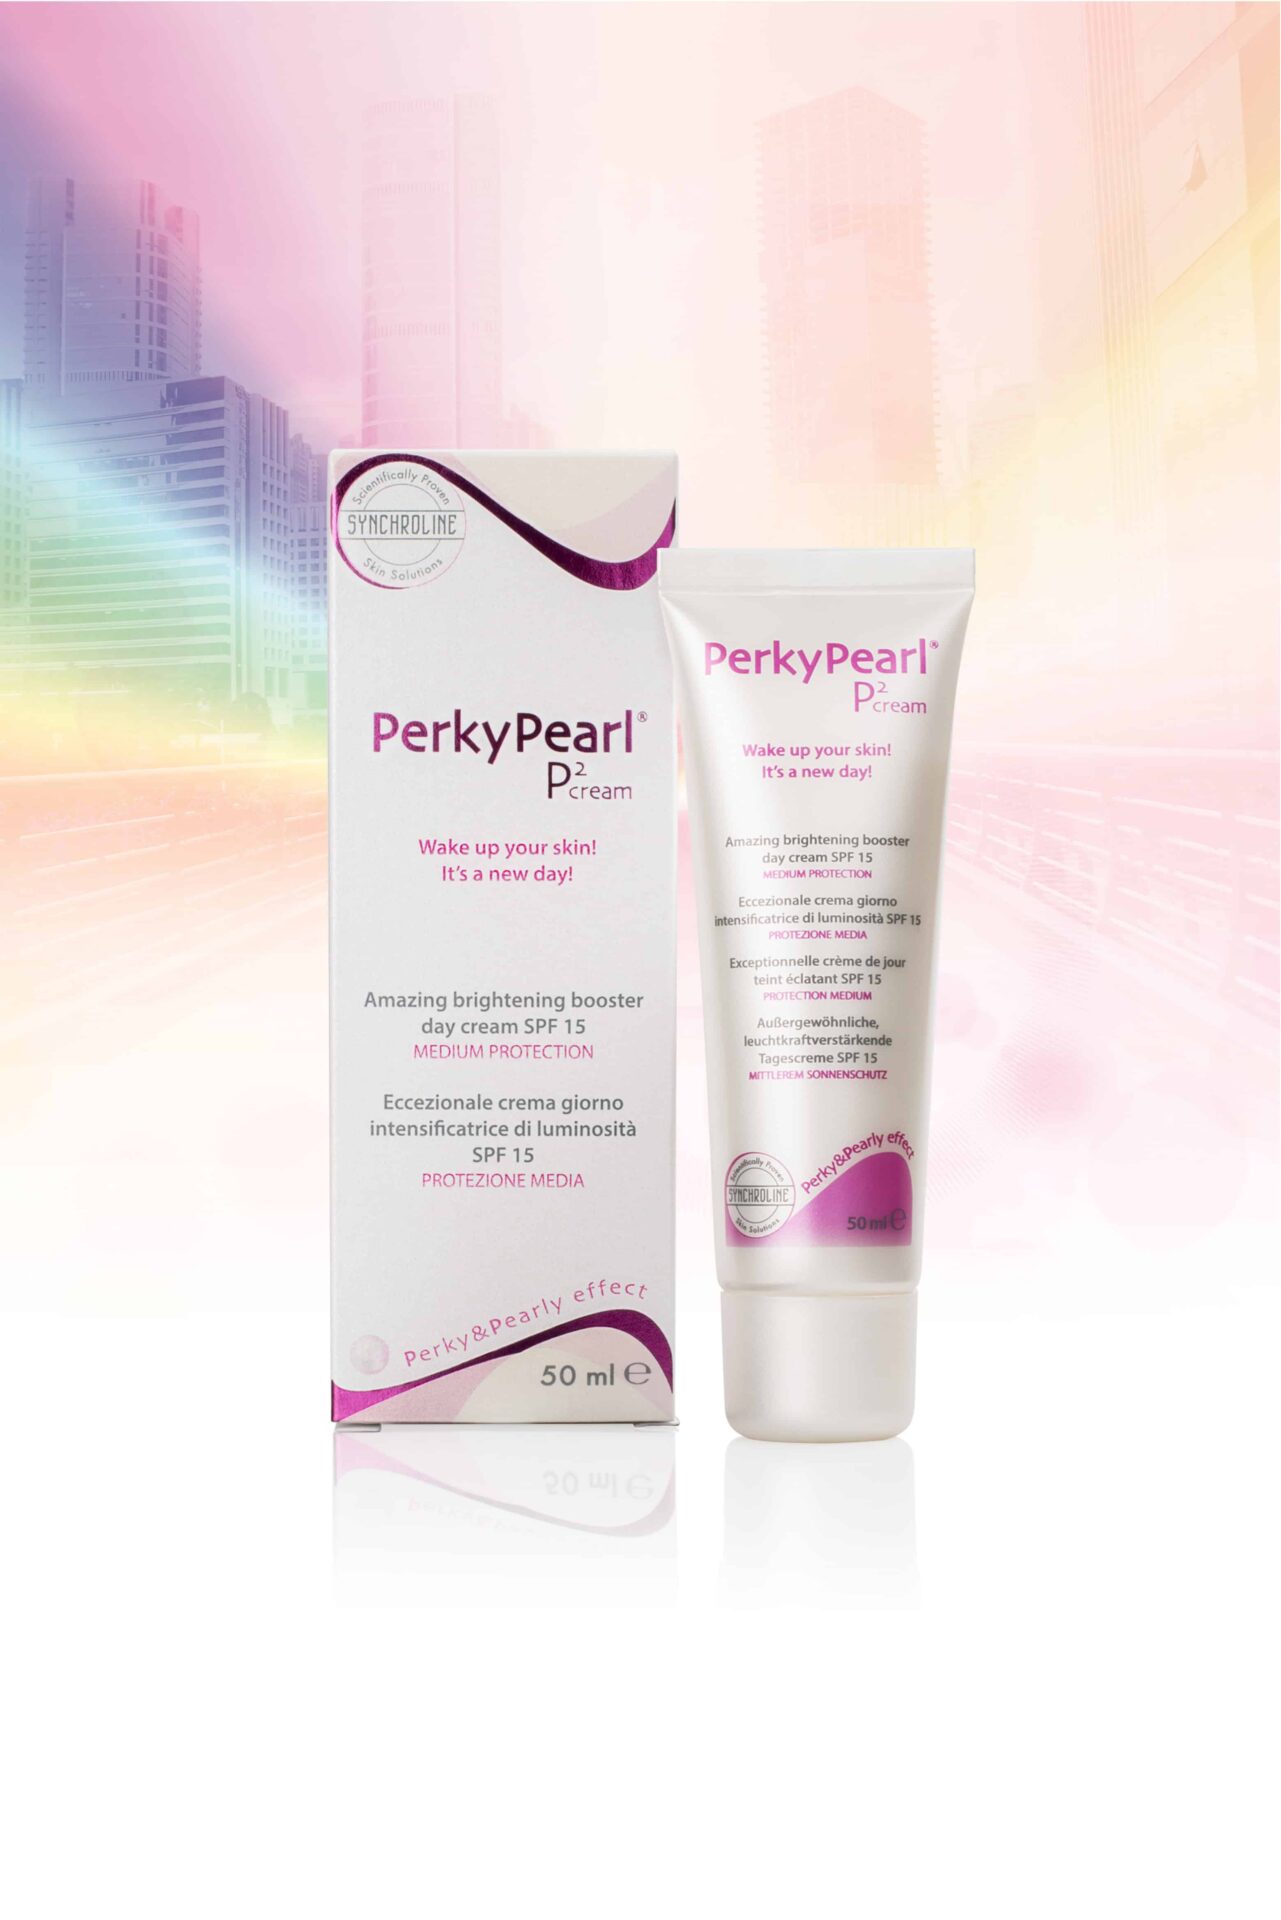 PERKY PEARL P2 cream, la rivoluzionaria luxury cosmetic crema da giorno adatta ad ogni tipo di pelle - Le Shopping News Il Magazine per gli Appassionati di Moda e Tendenze